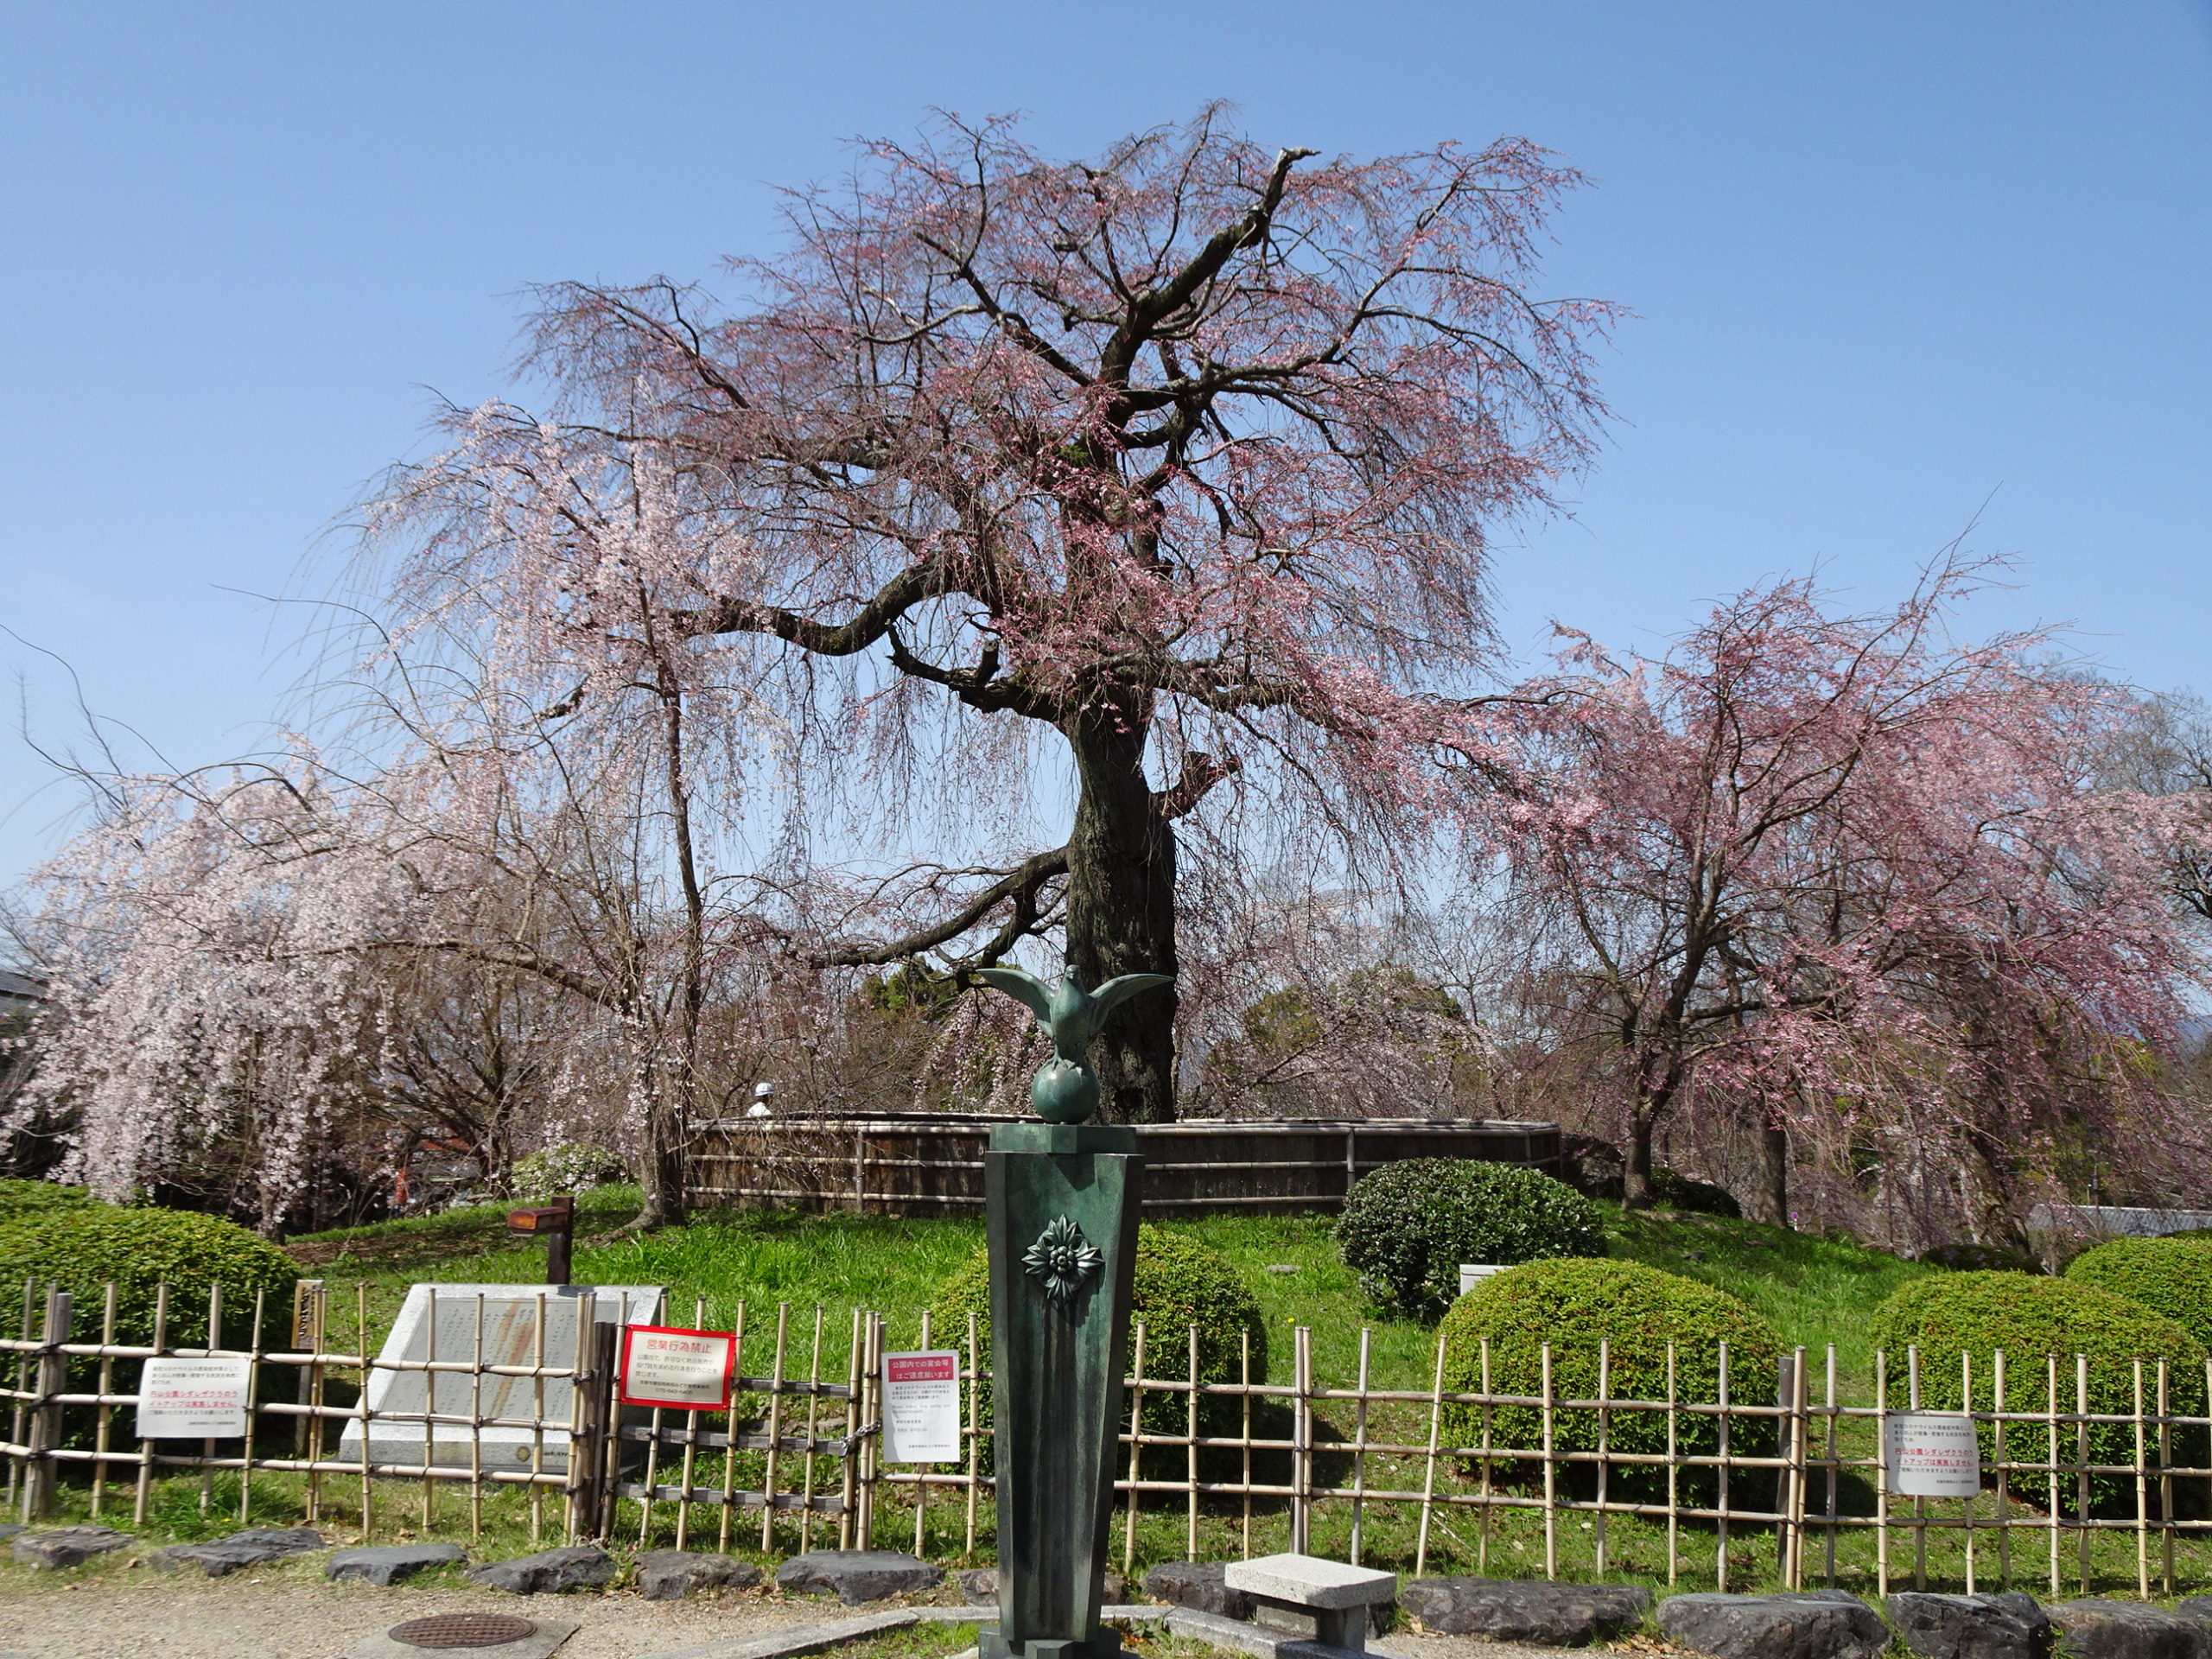 京都の桜、清水寺と円山公園から知恩院さんへ～ひとり静かにお散歩 